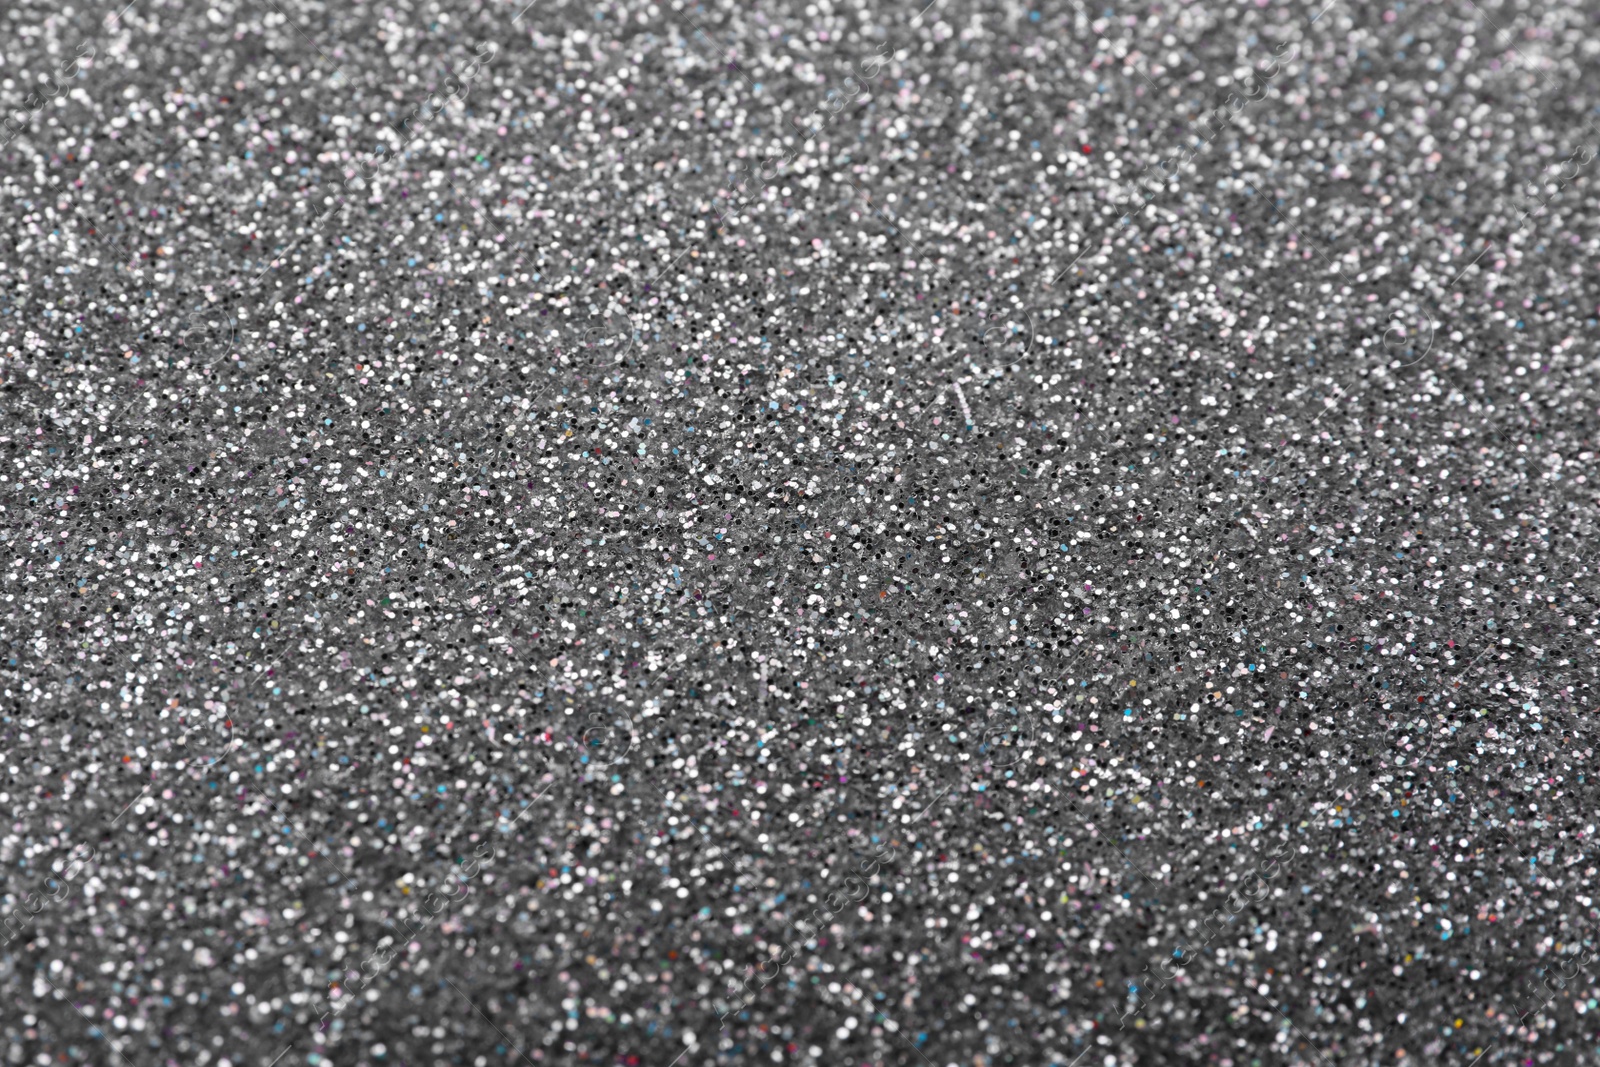 Photo of Beautiful shiny grey glitter as background, closeup